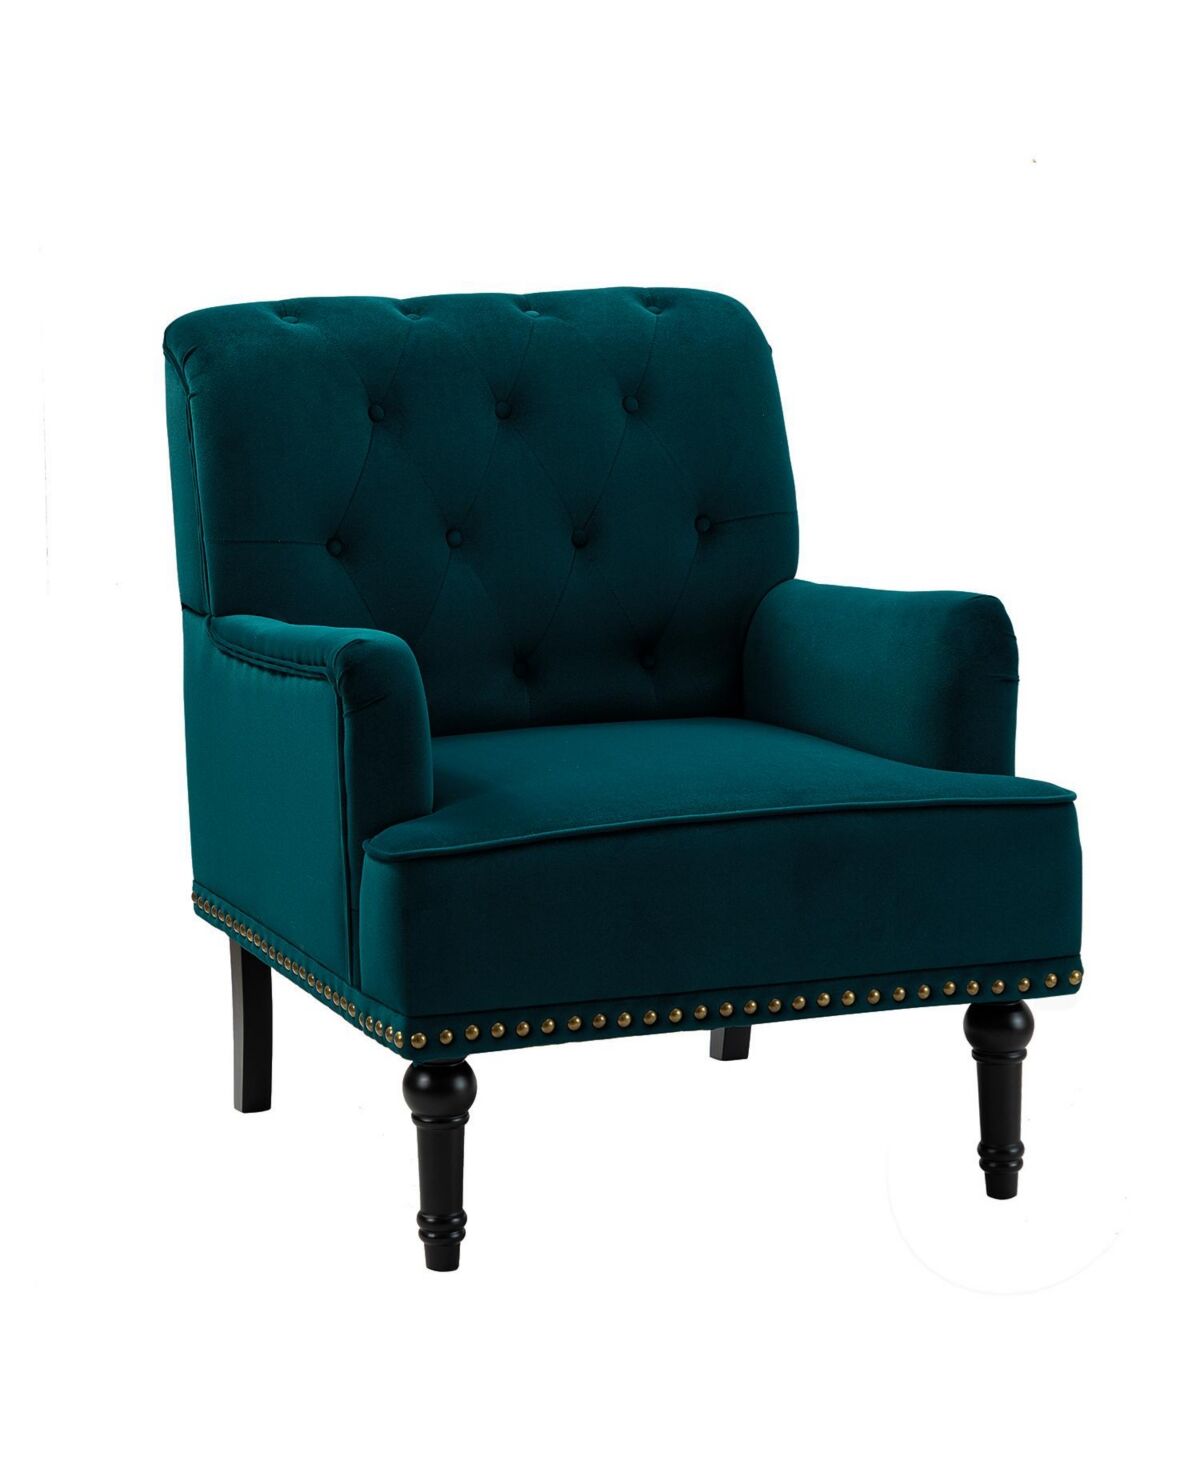 Hulala Home Velvet Tufted Upholstered Single Sofa Chair for Living Room Bedroom - Teal